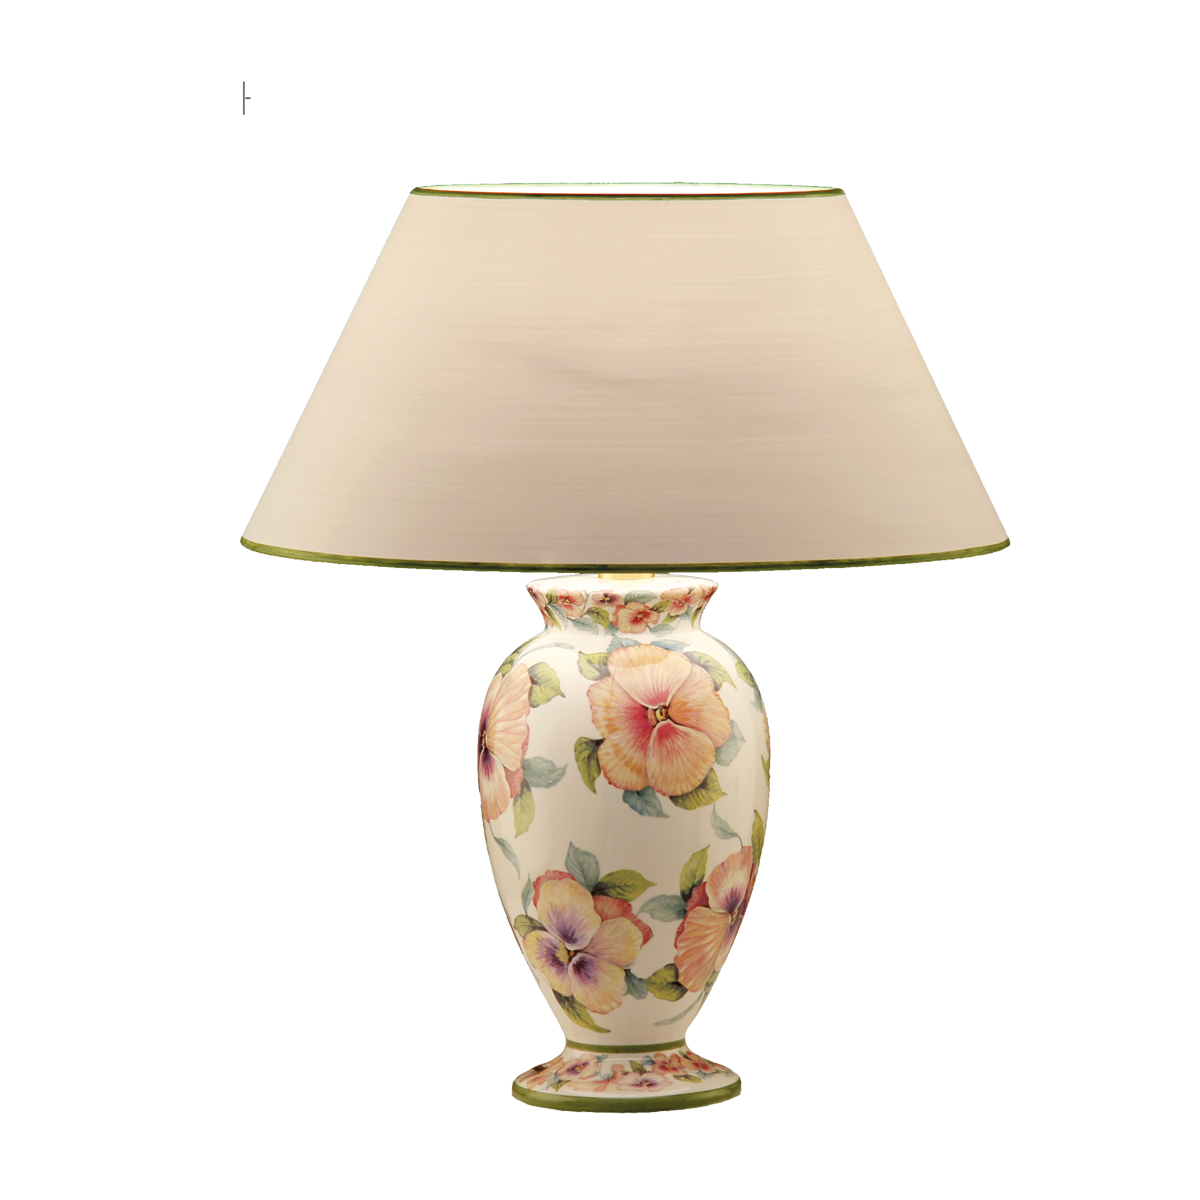 Tischleuchte 3 Keramik Vasenleuchte mit Dekor Blüten Motiv E27 mit Lampenschirm in Strichlack Farbe nach Wahl